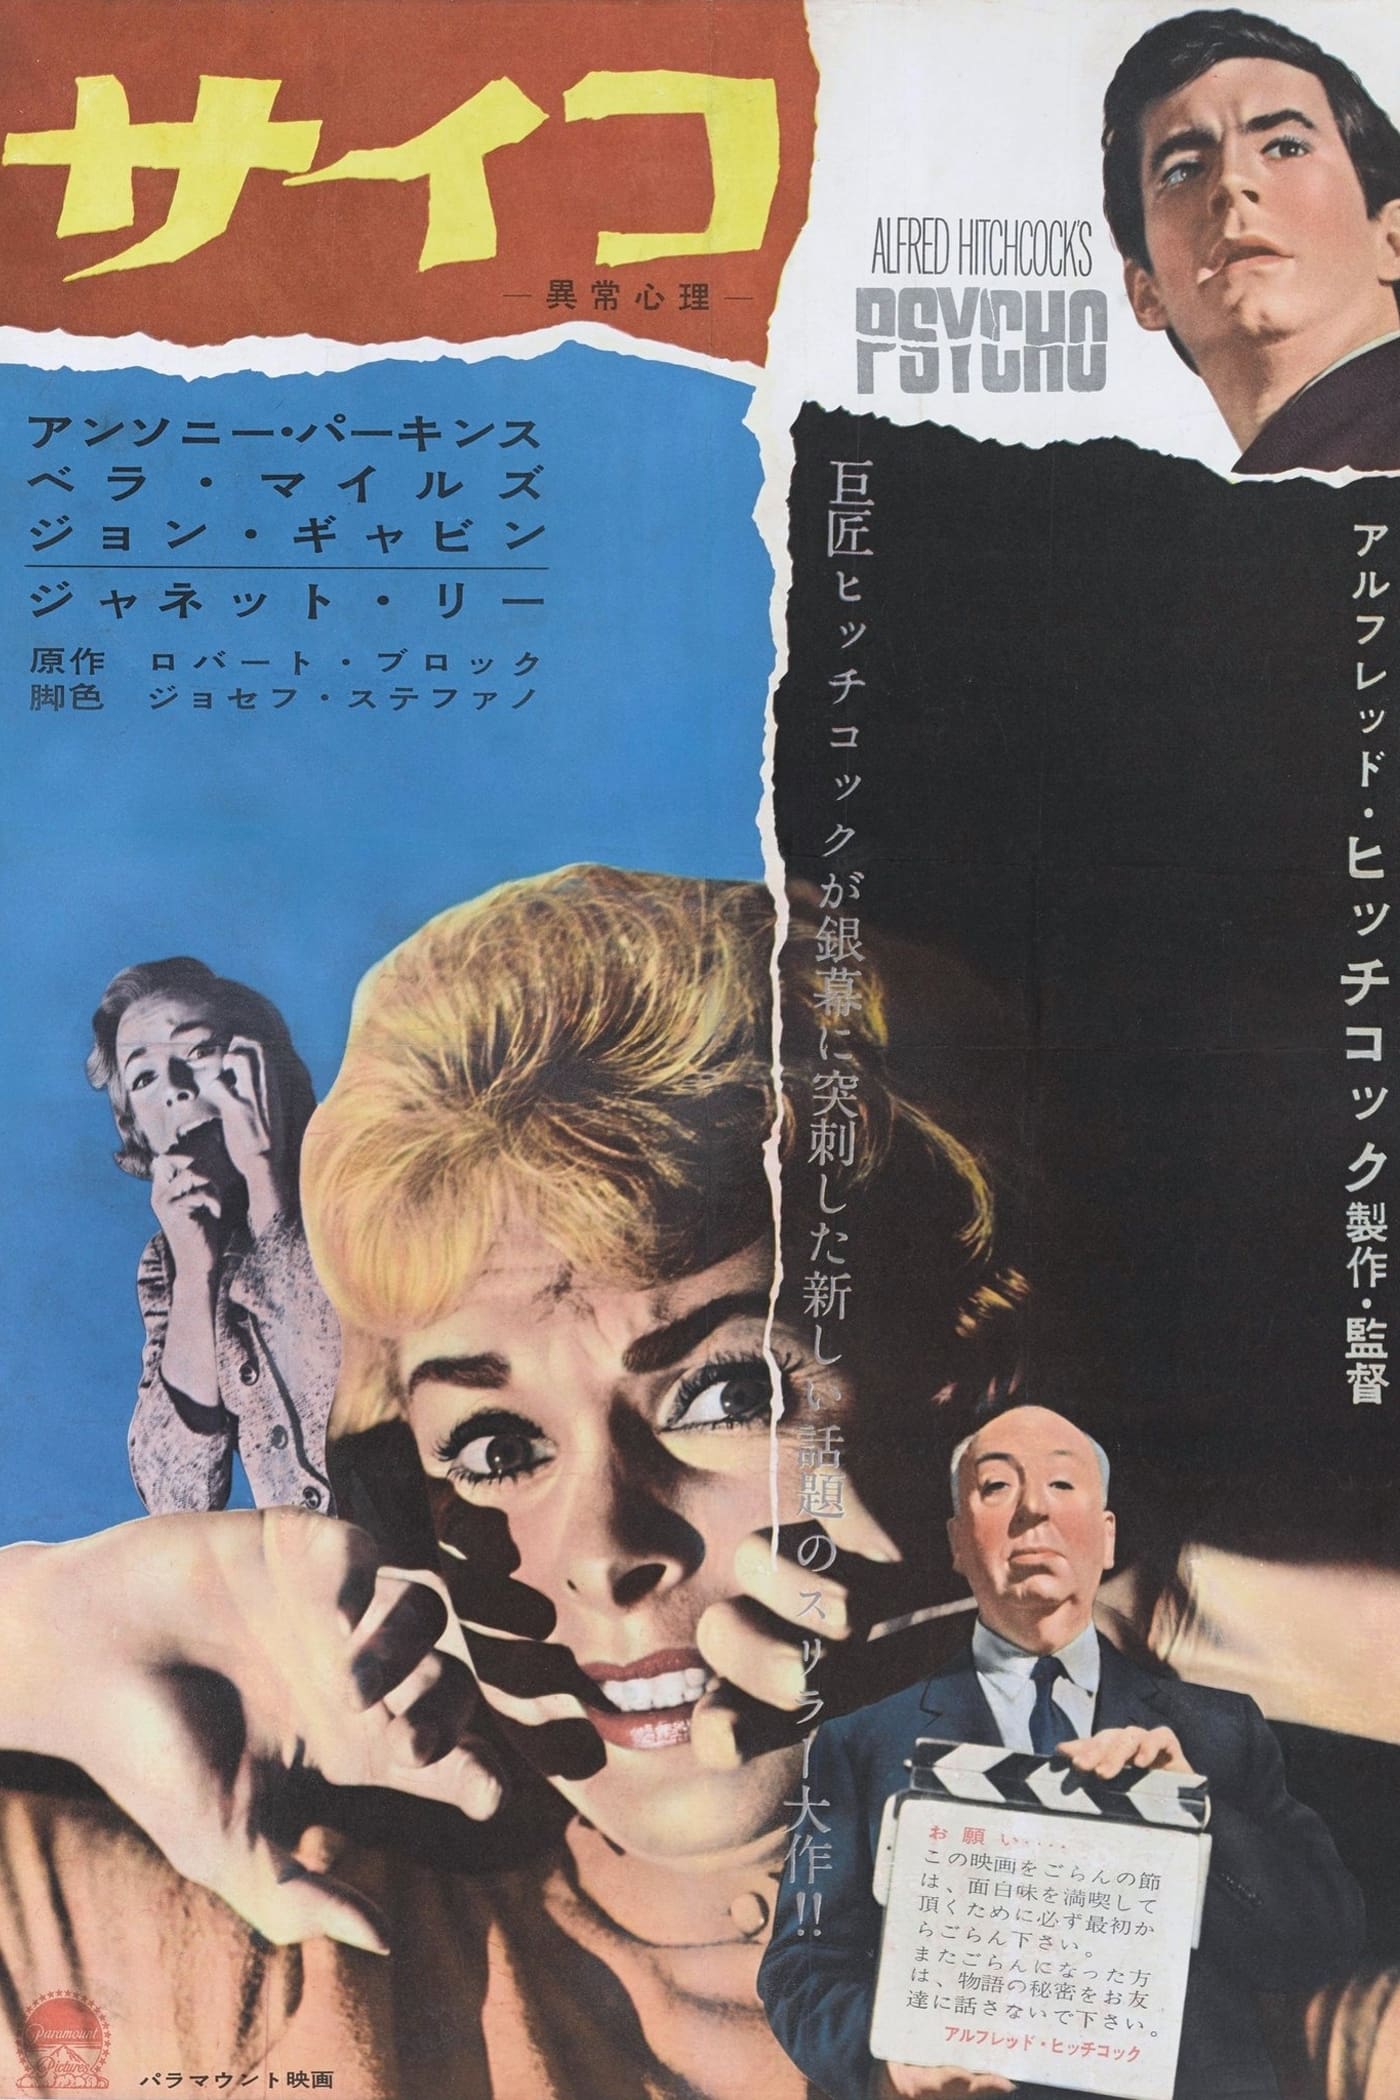 サイコ (1960) - ポスター画像 — The Movie Database (TMDB)